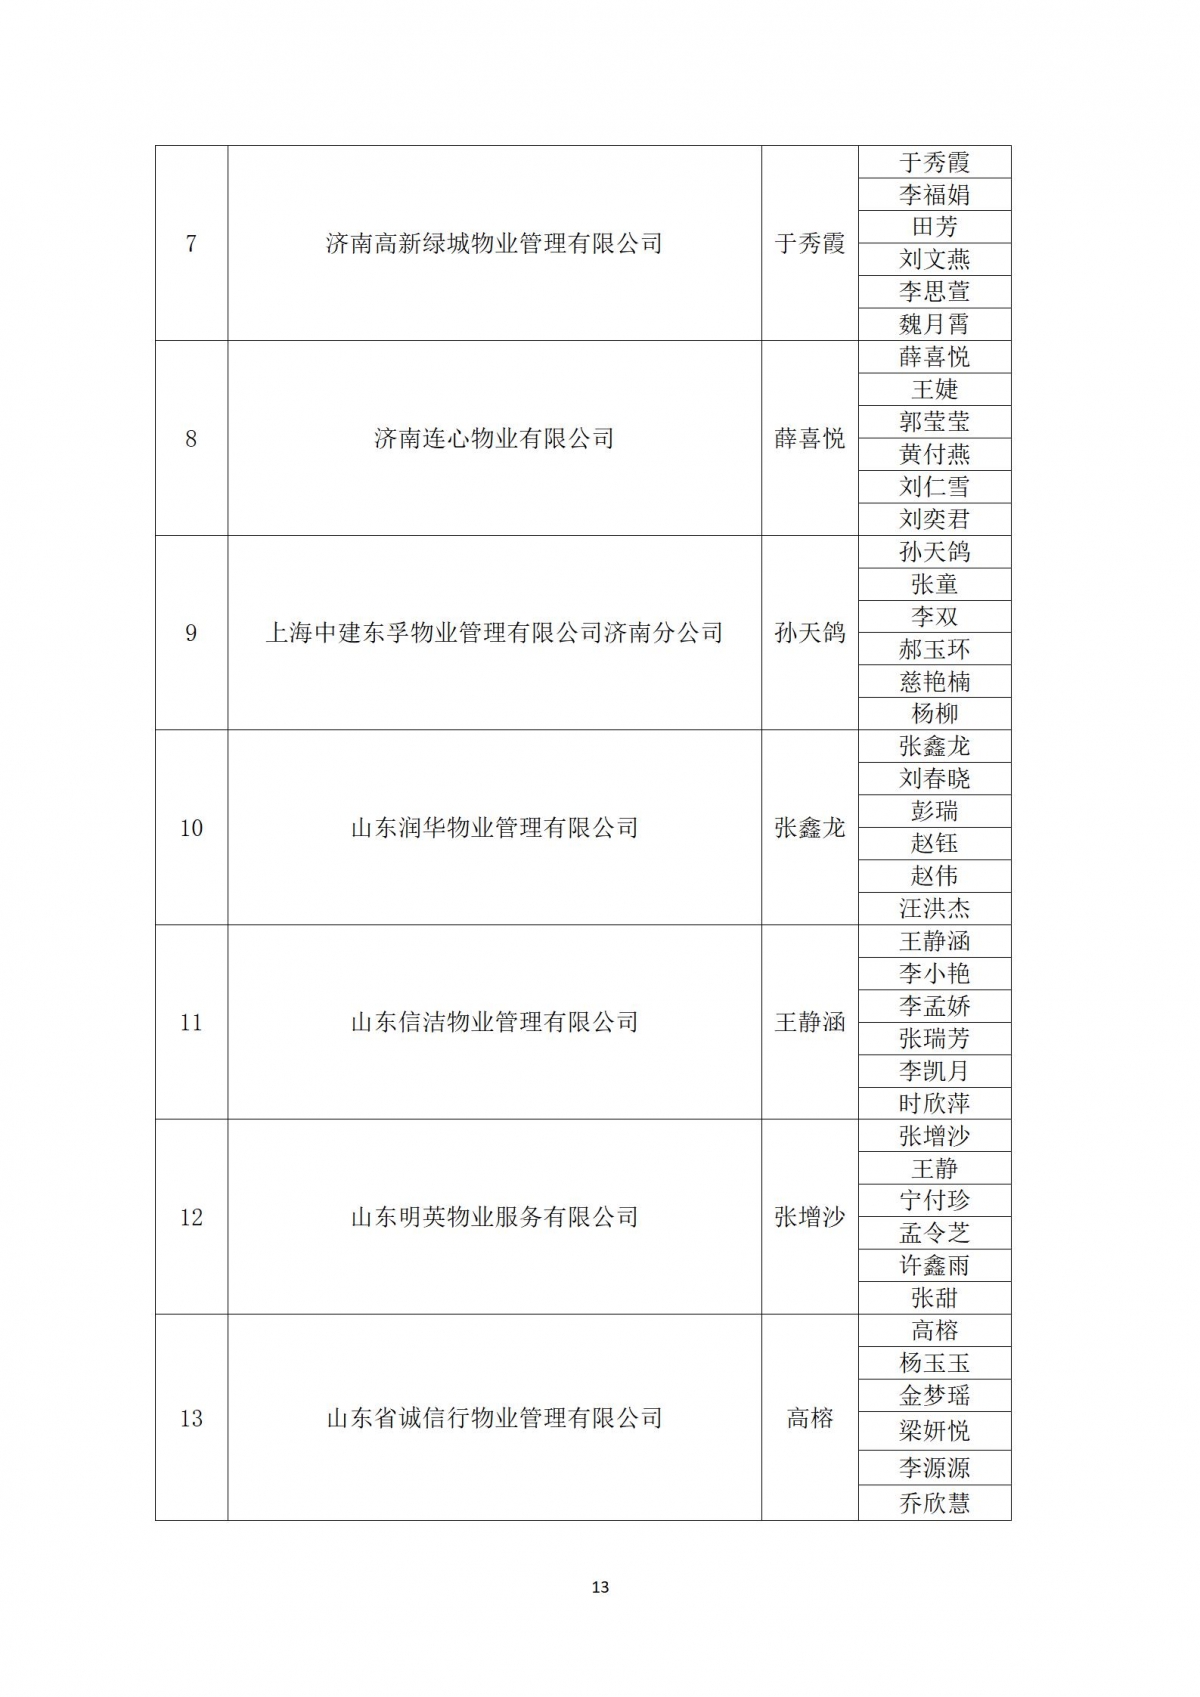 关于“天城杯”第七届济南市物业服务行业职业技能竞赛选手名单的公示_13